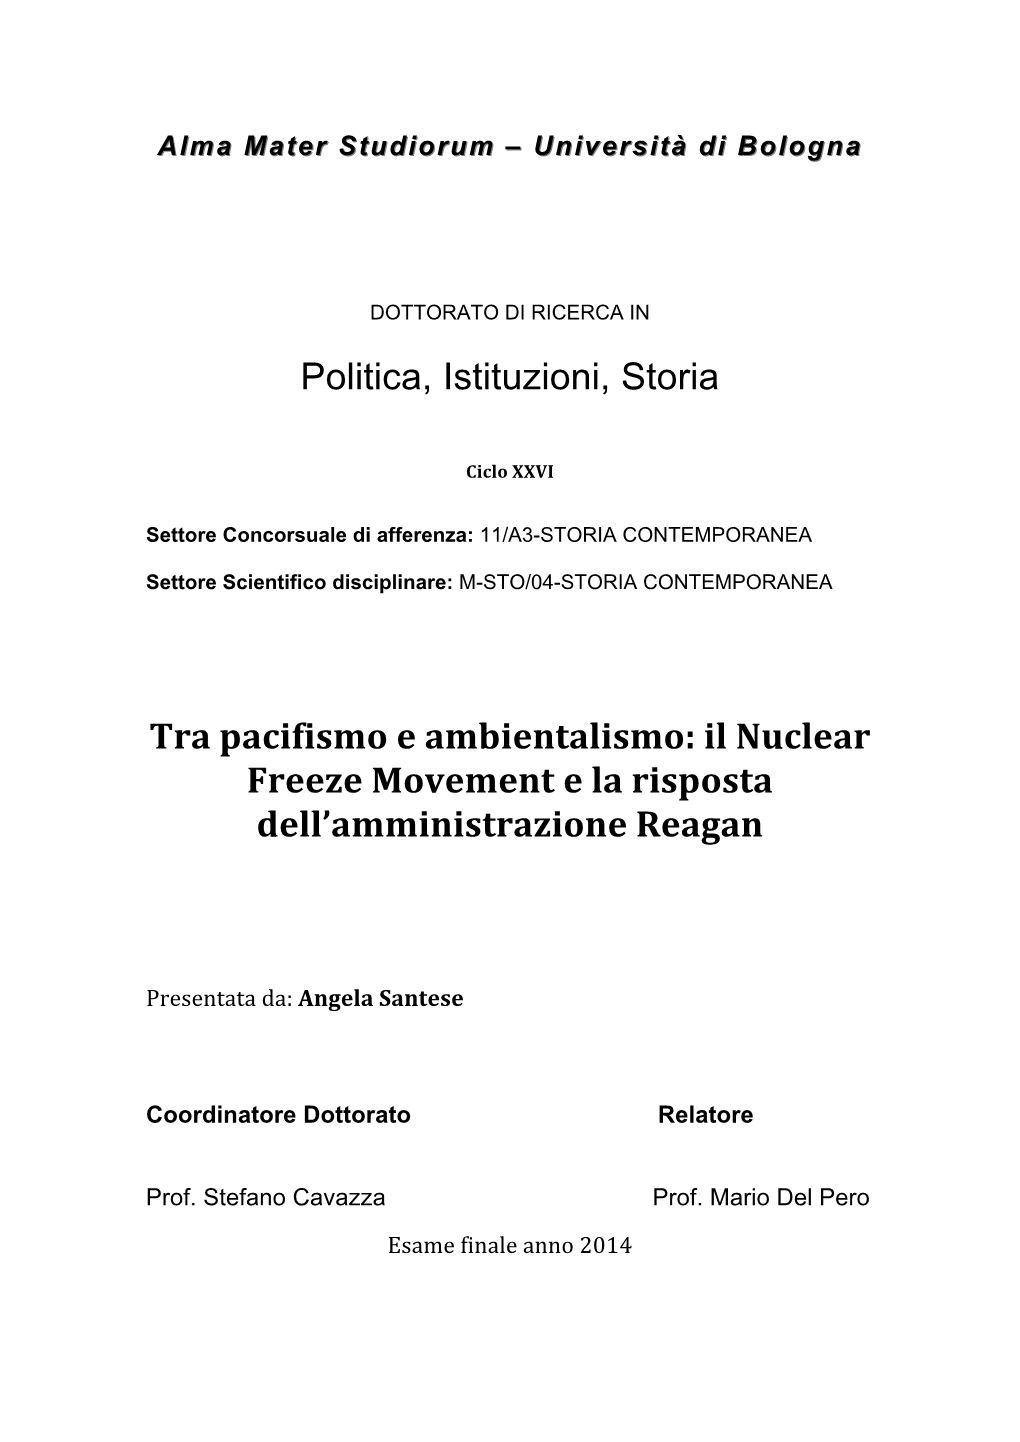 Politica, Istituzioni, Storia Tra Pacifismo E Ambientalismo: Il Nuclear Freeze Movement